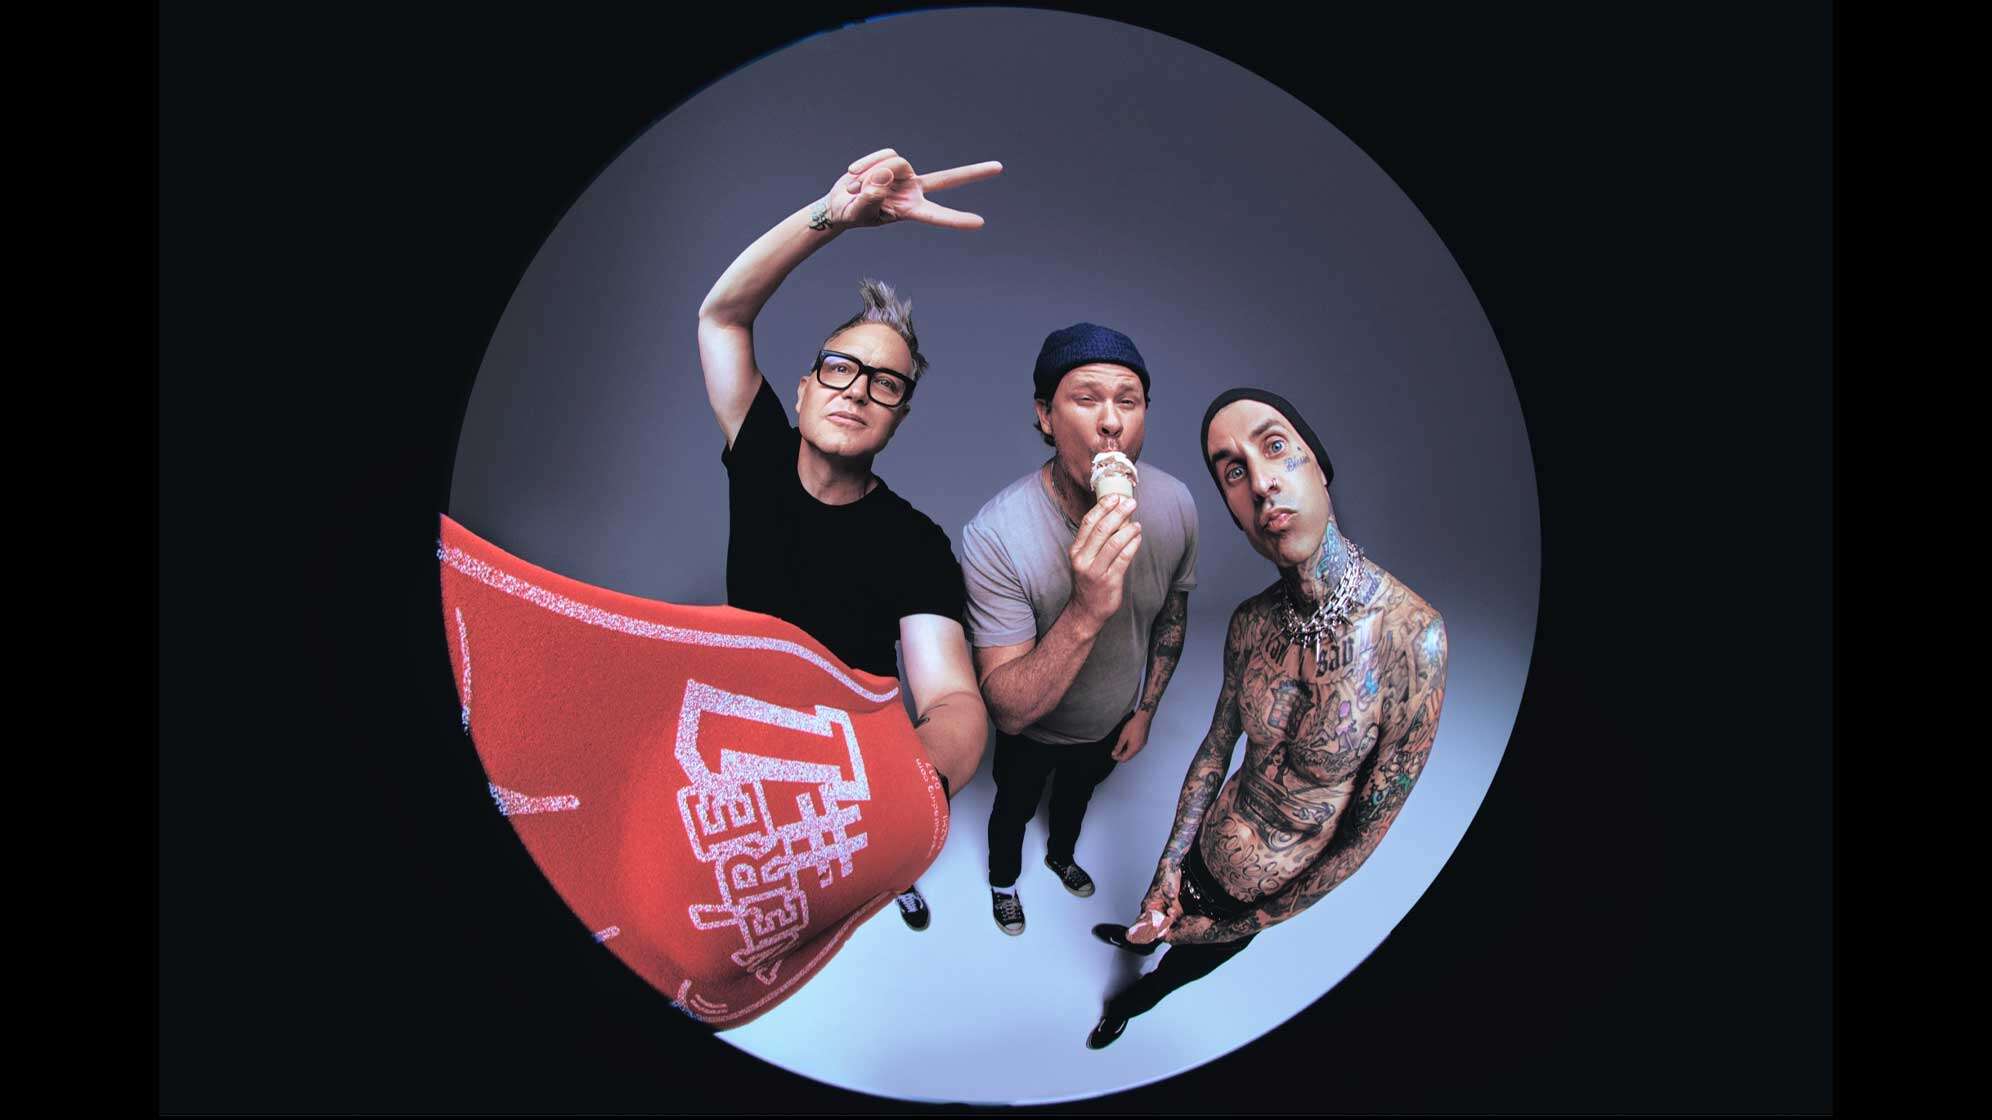 Das aktuelle Bandfoto der Band blink-182 - von links nach rechts: Mark Hoppus, Tom DeLonge, Travis Barker.